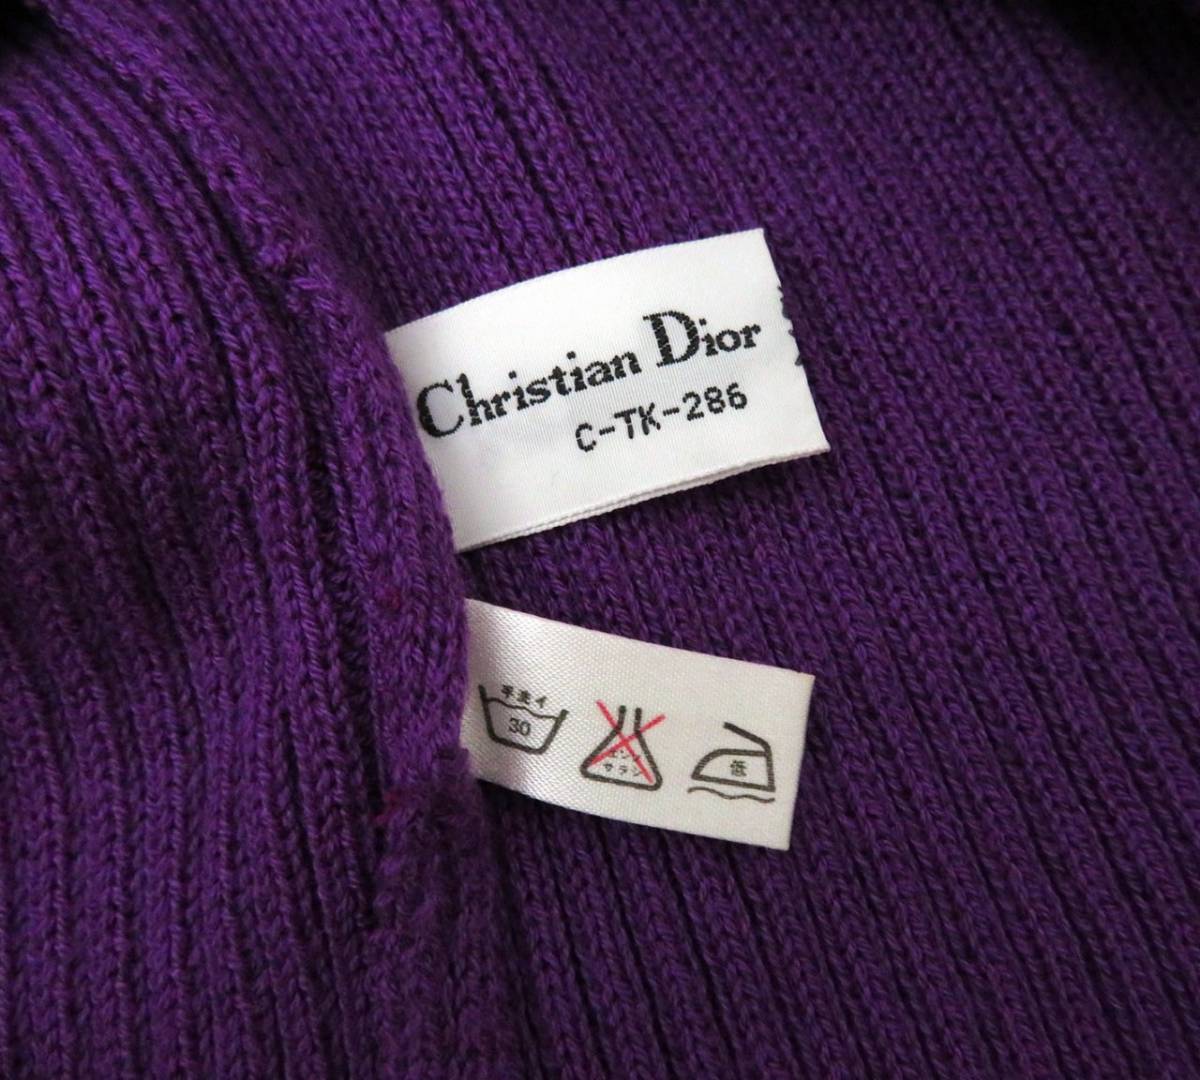 4792 美品 Christian Dior クリスチャンディオール vintage ロゴ刺繍入り 半袖 ニット セーター Tシャツ カットソー 紫 パープル 希少 _画像9